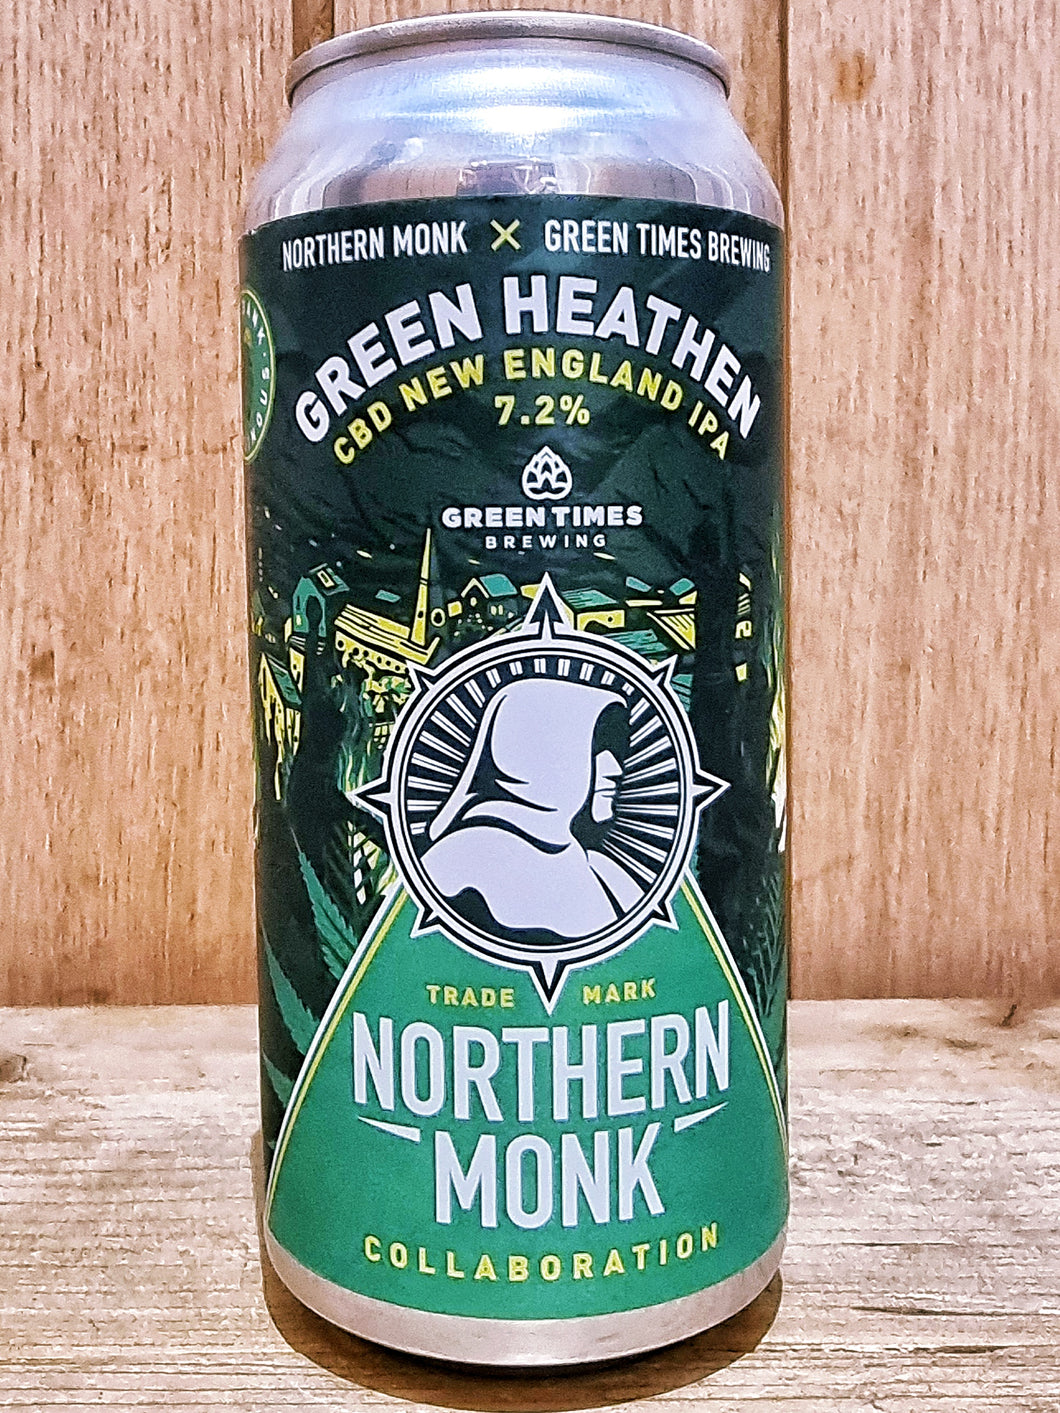 Northern Monk - Green Heathen NEIPA